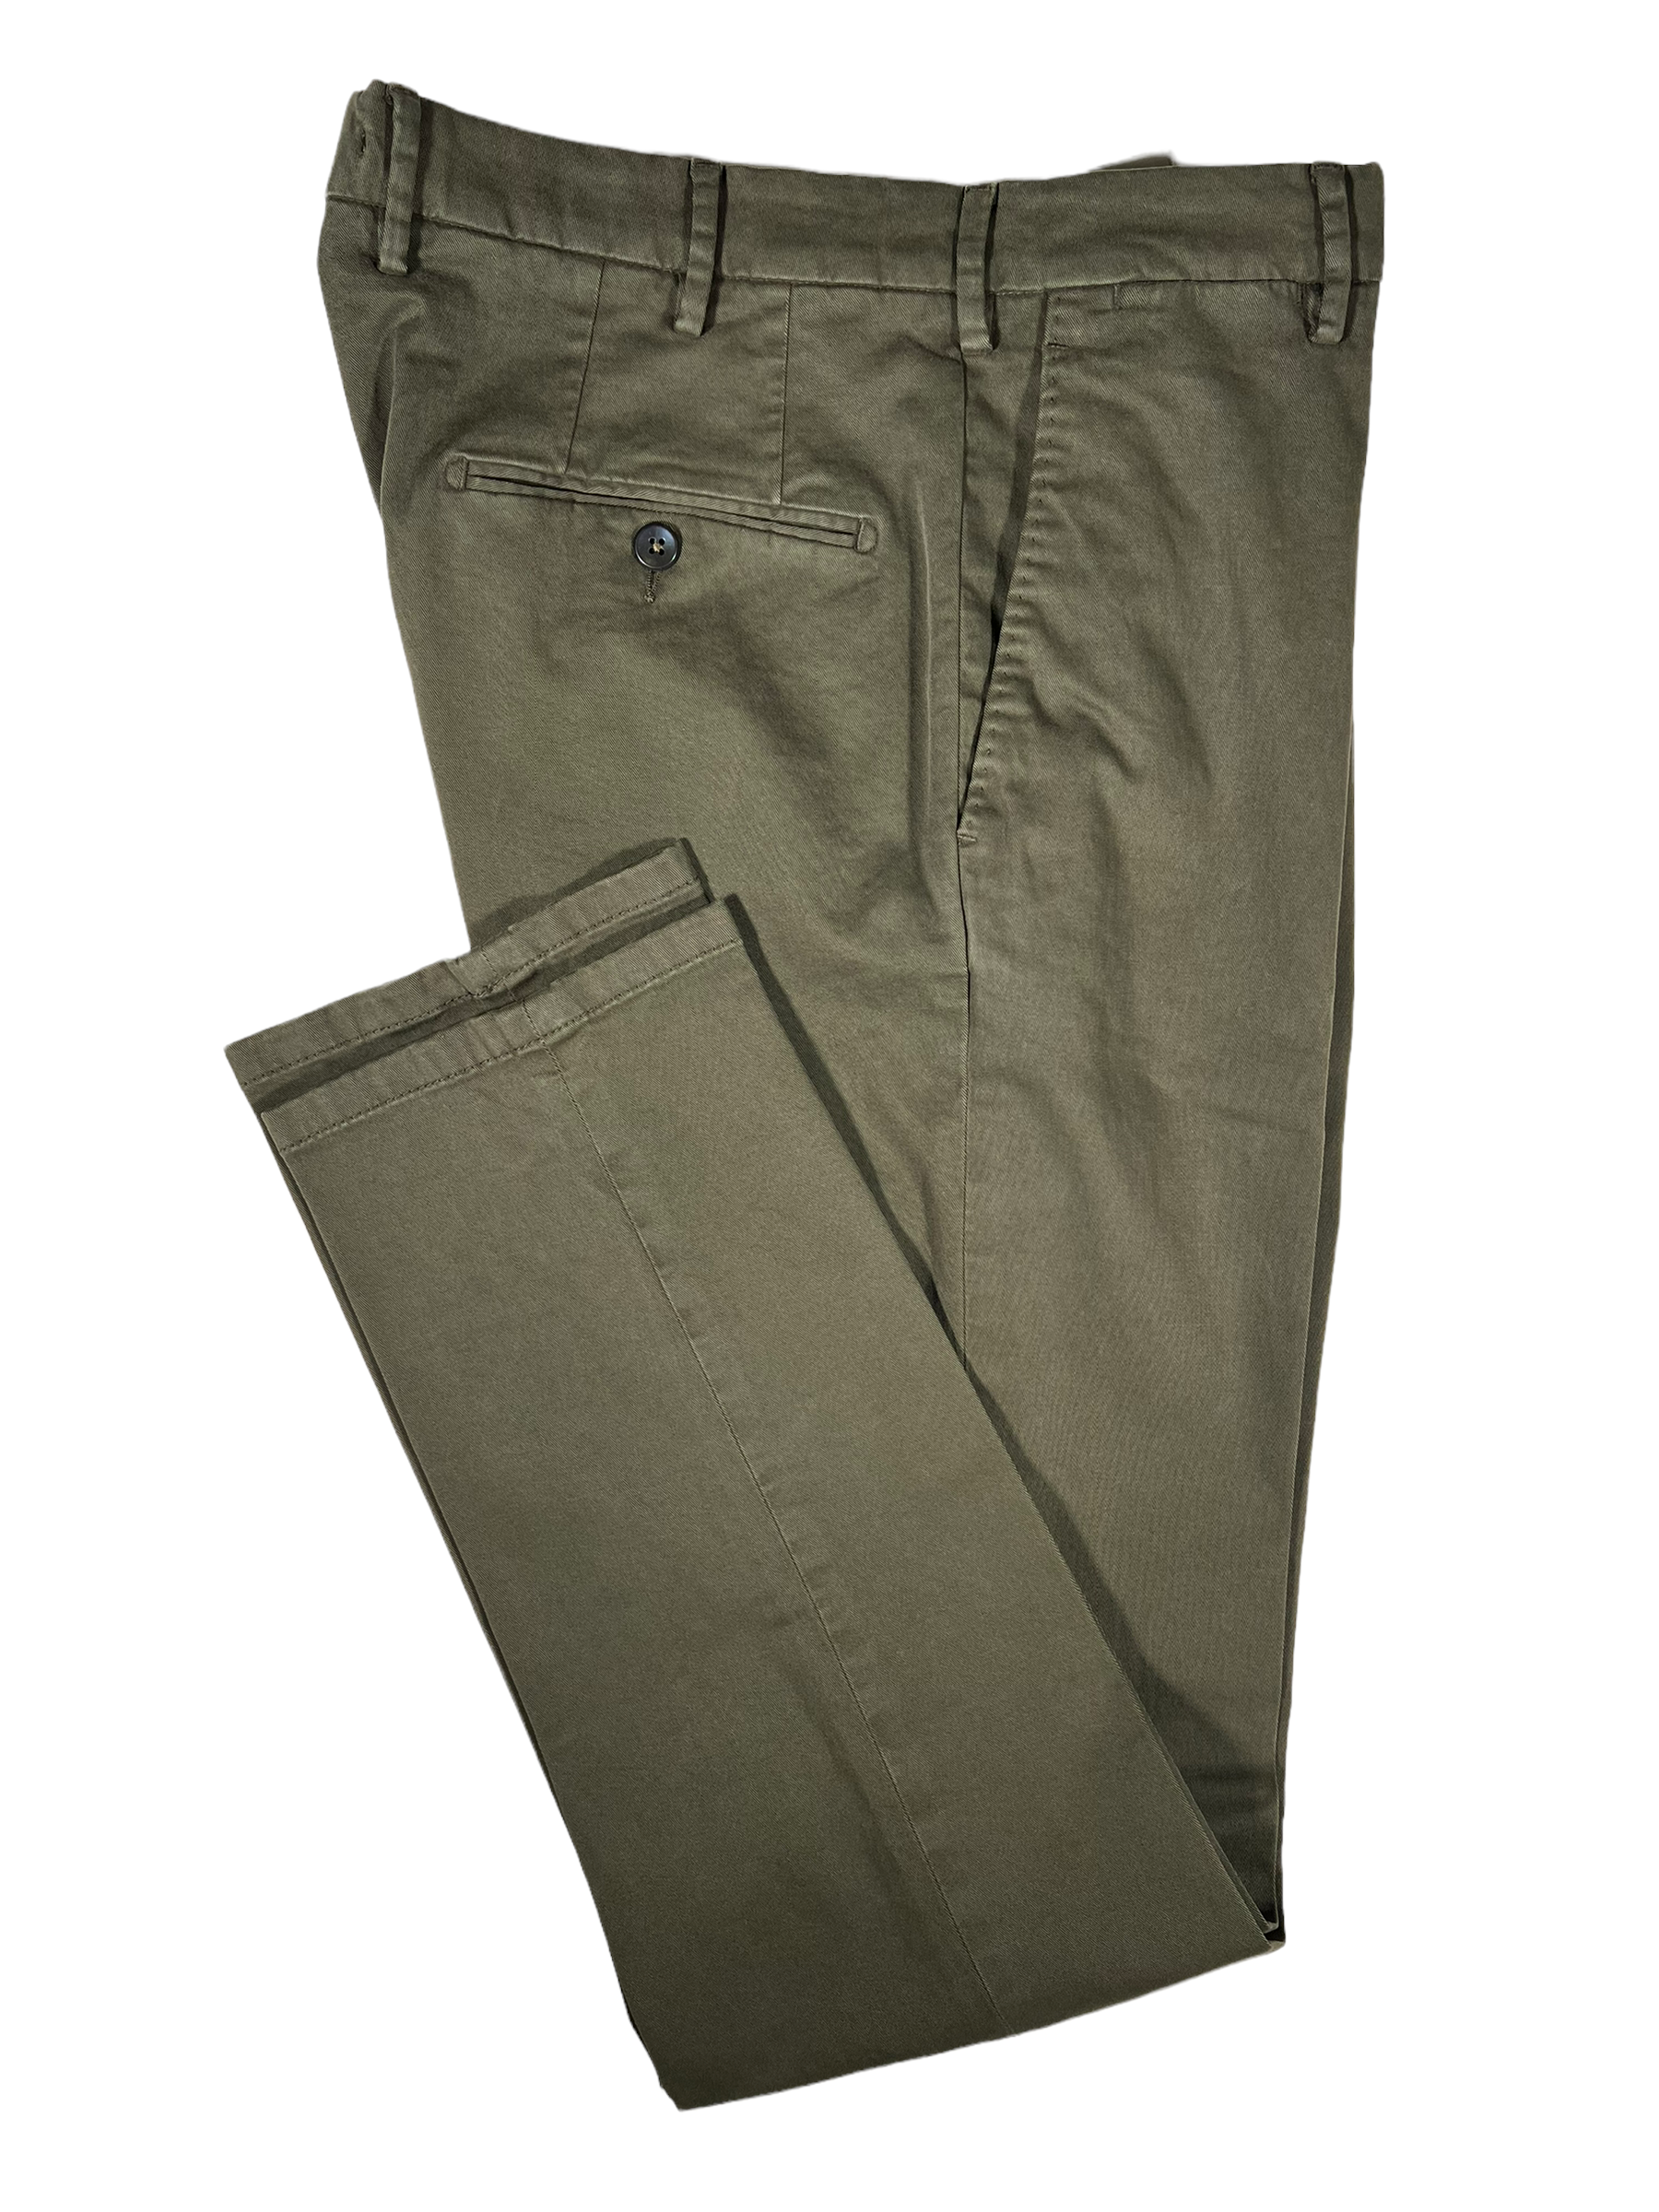 Men's Organic Cotton Stretch Trouser in Beige Slim Fit